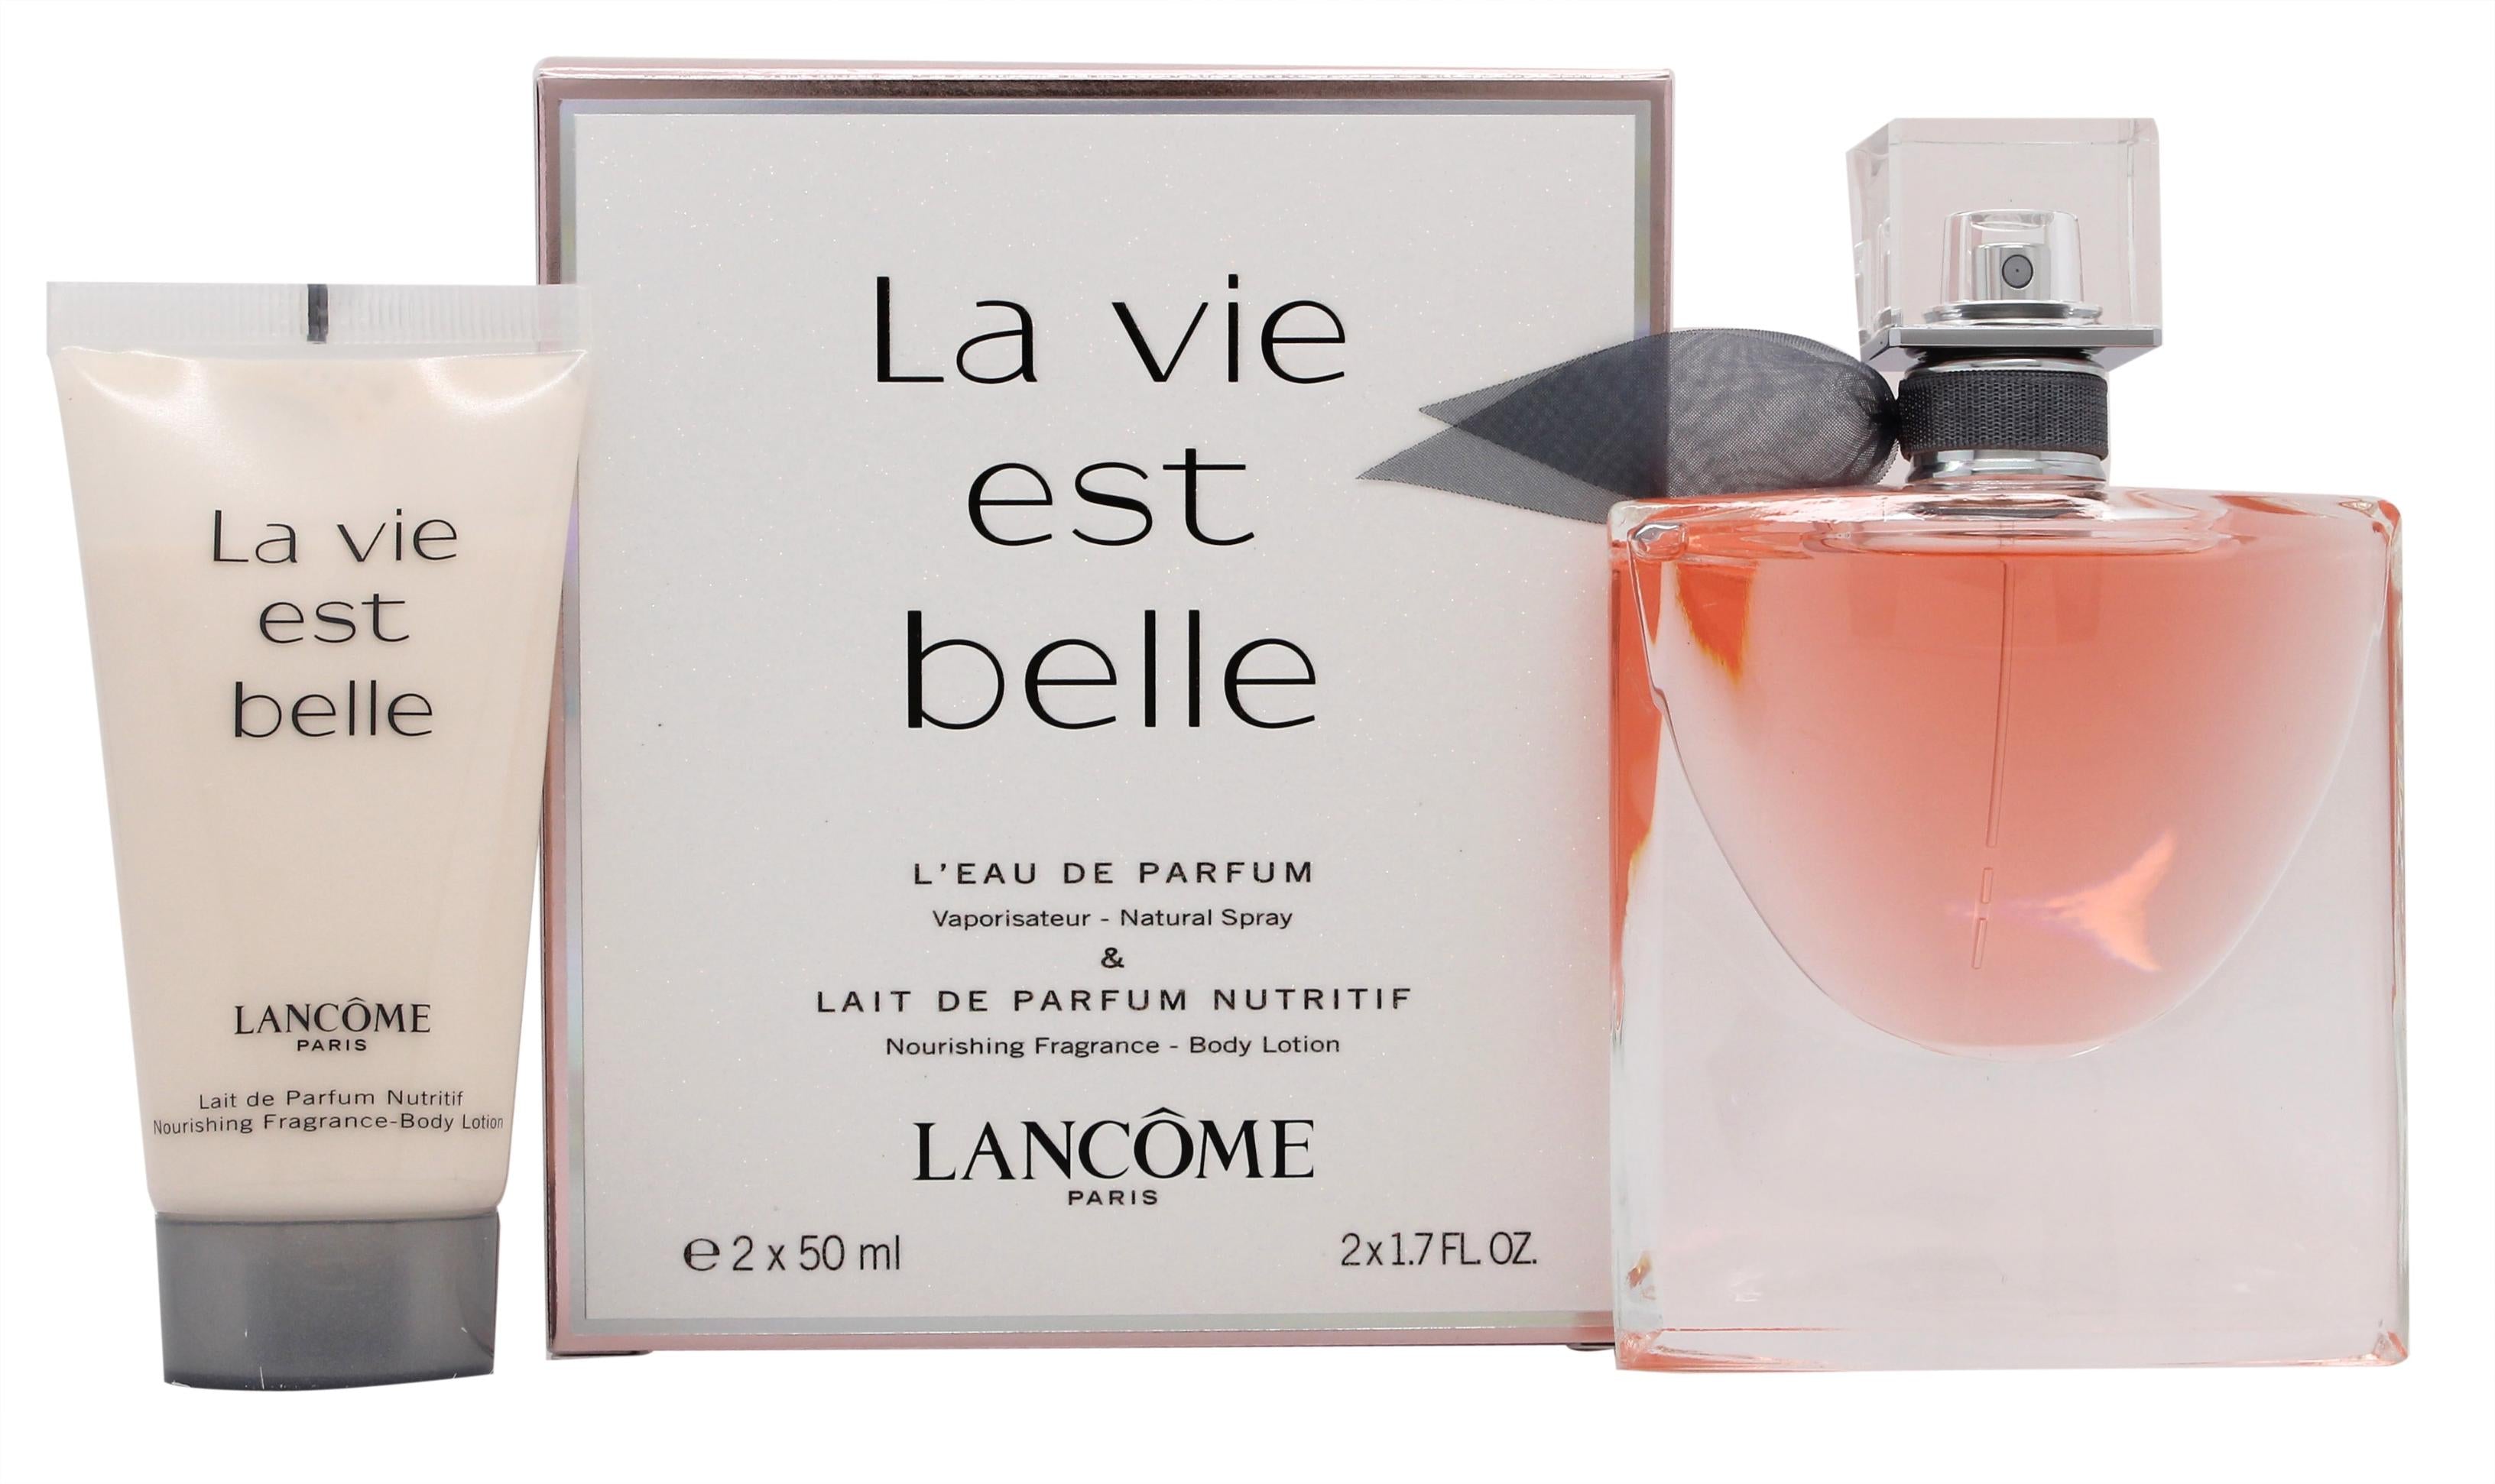 View Lancome La Vie Est Belle LEau de Parfum Gift Set 50ml Spray 50ml Body Lotion information